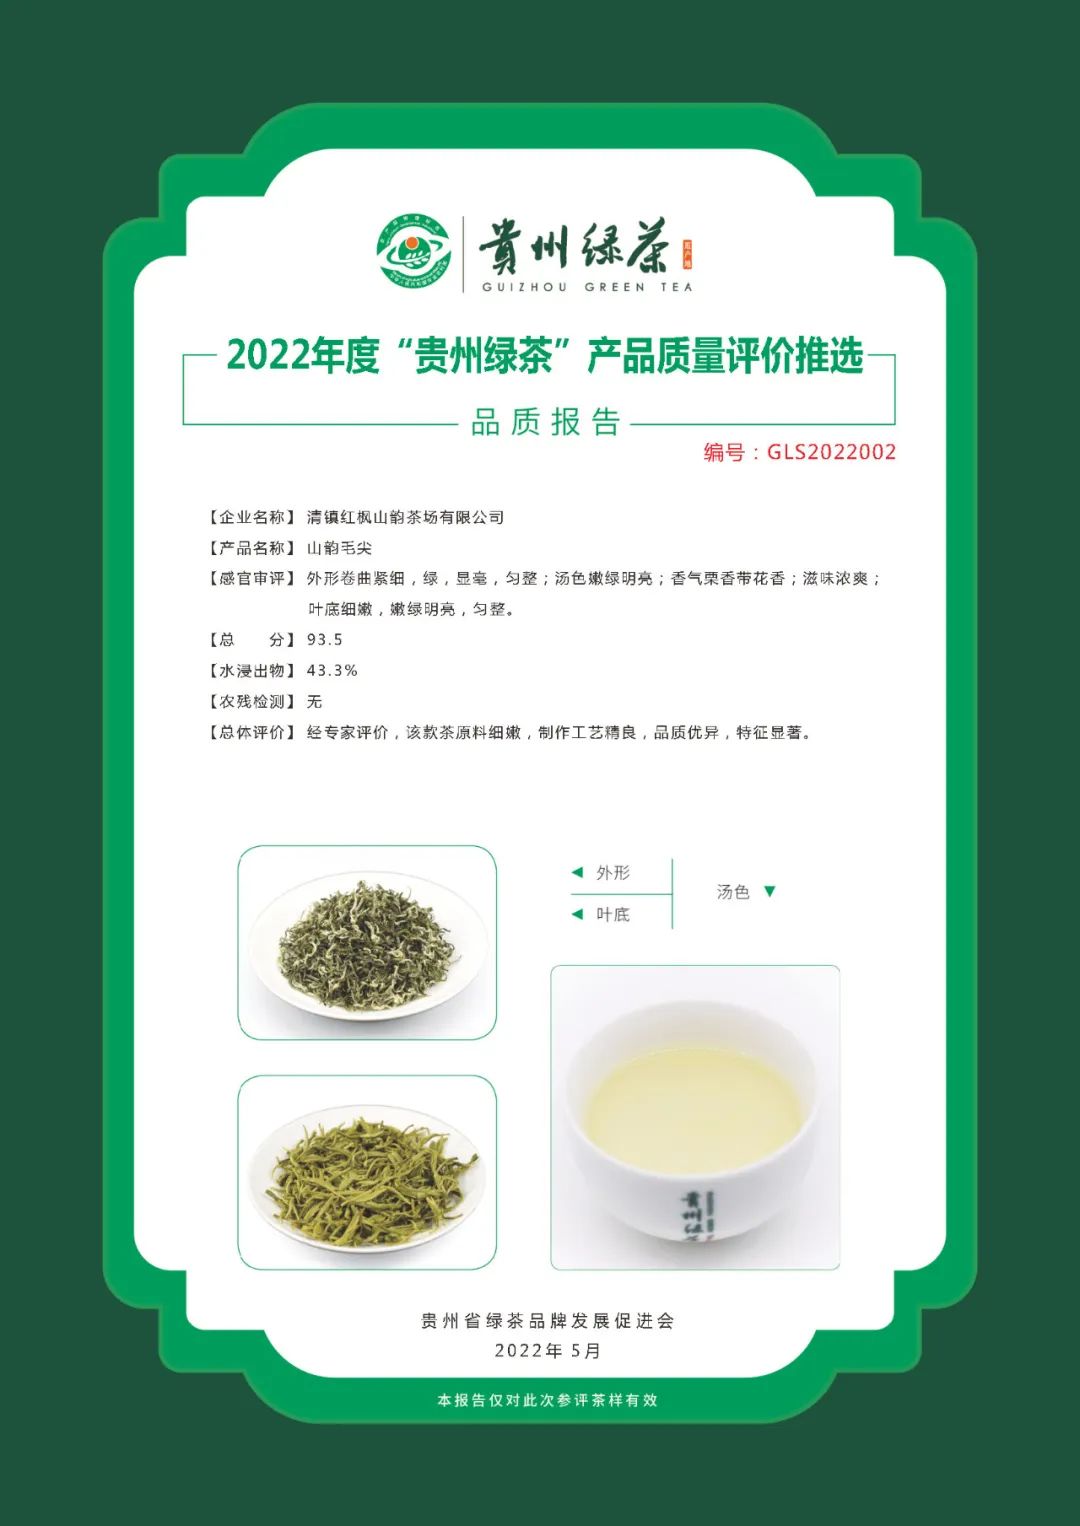 2024年“贵州绿茶”产品质量评价活动启动